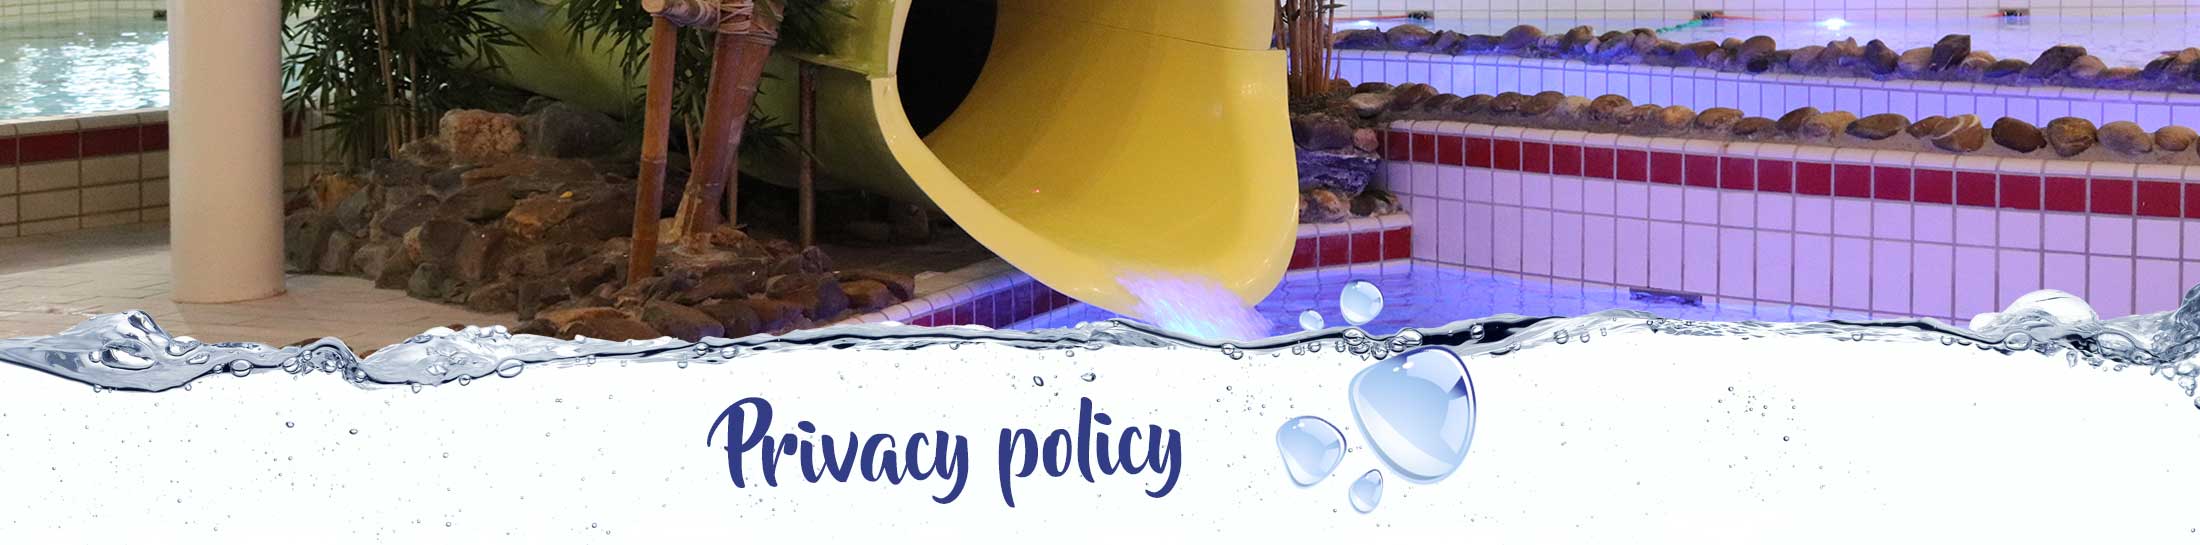 Privacy Policy SwimSportfun